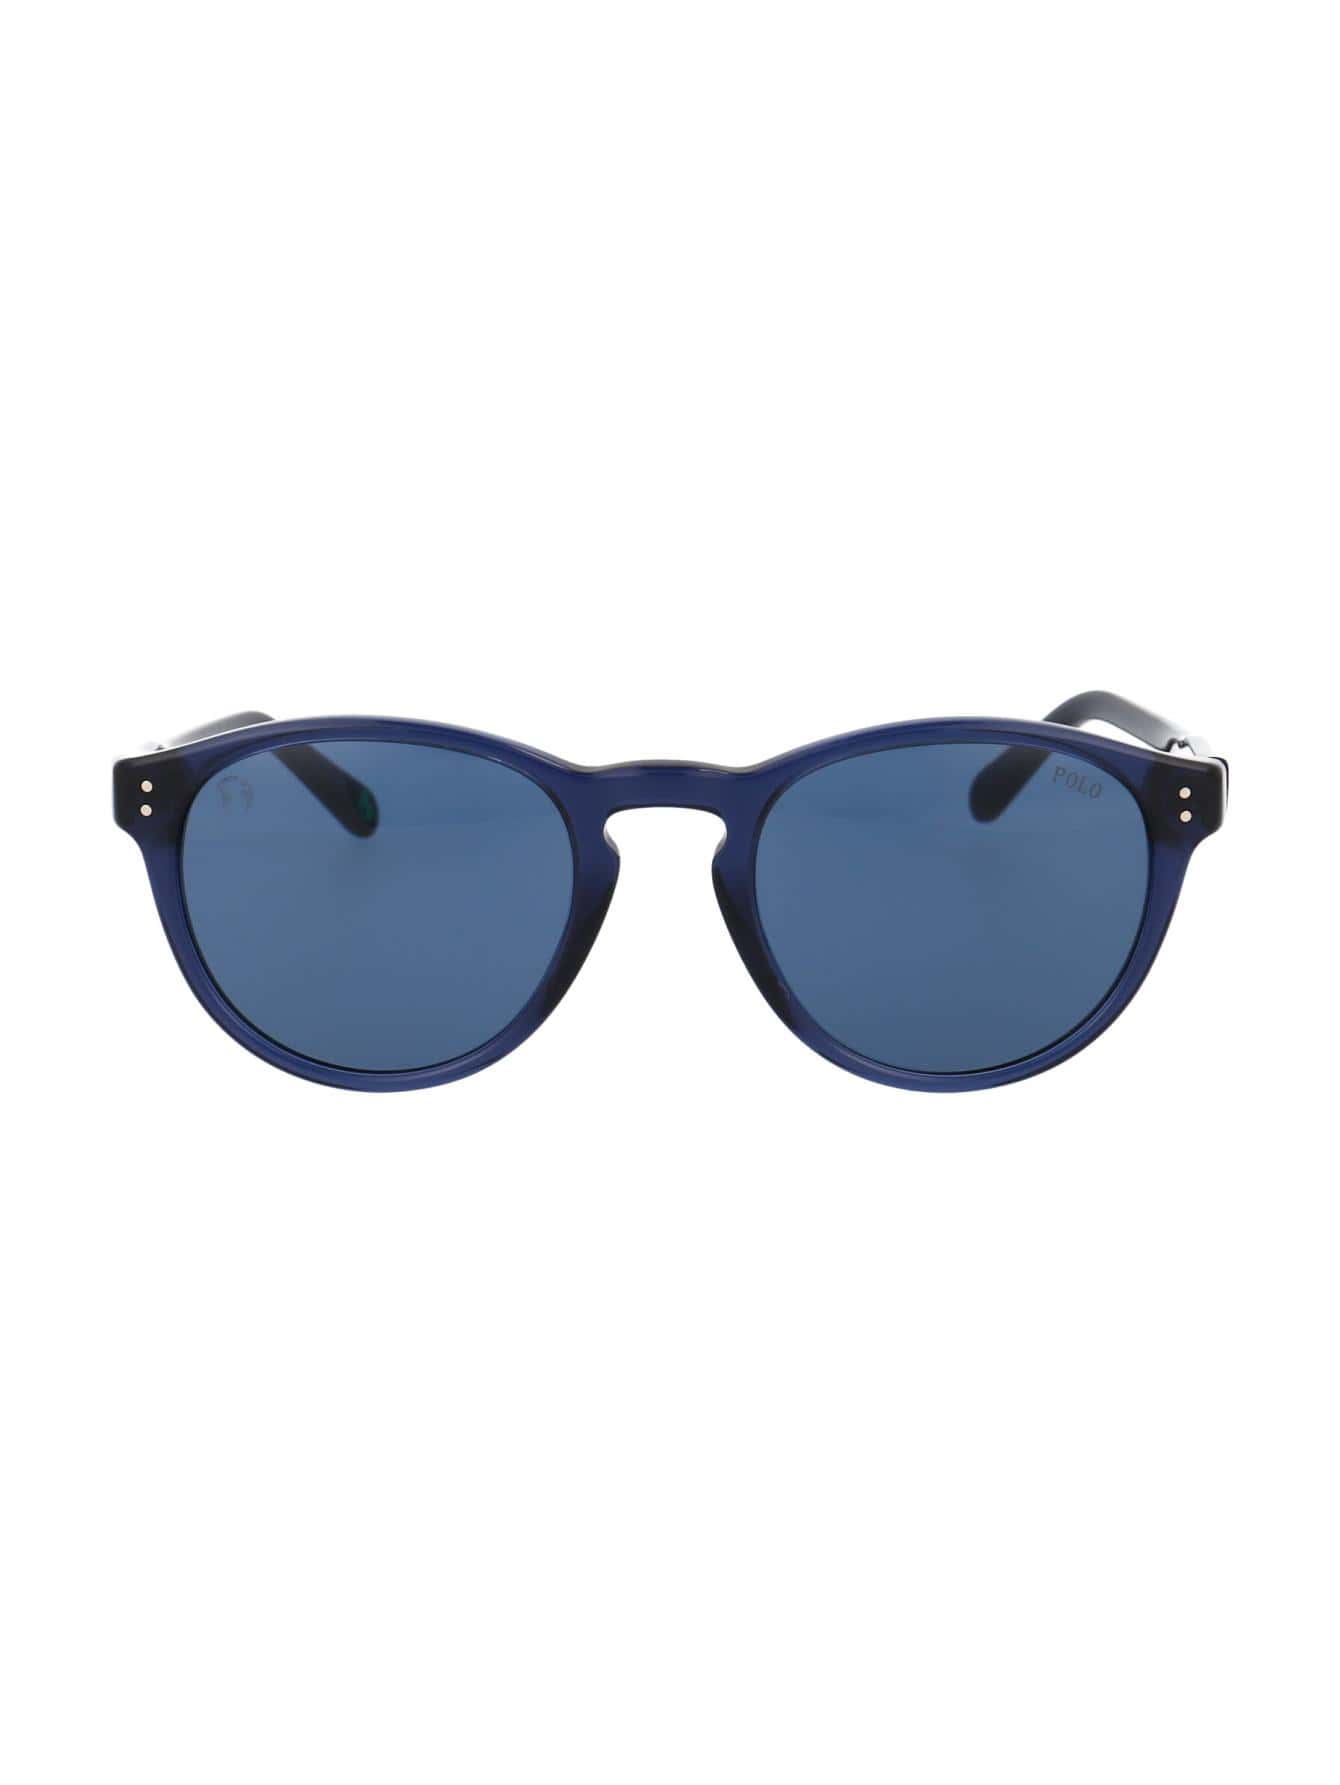 Мужские солнцезащитные очки Polo Ralph Lauren СИНИЕ 0PH4172595580, синий мужские кепки polo ralph lauren черные 710548524012 черный